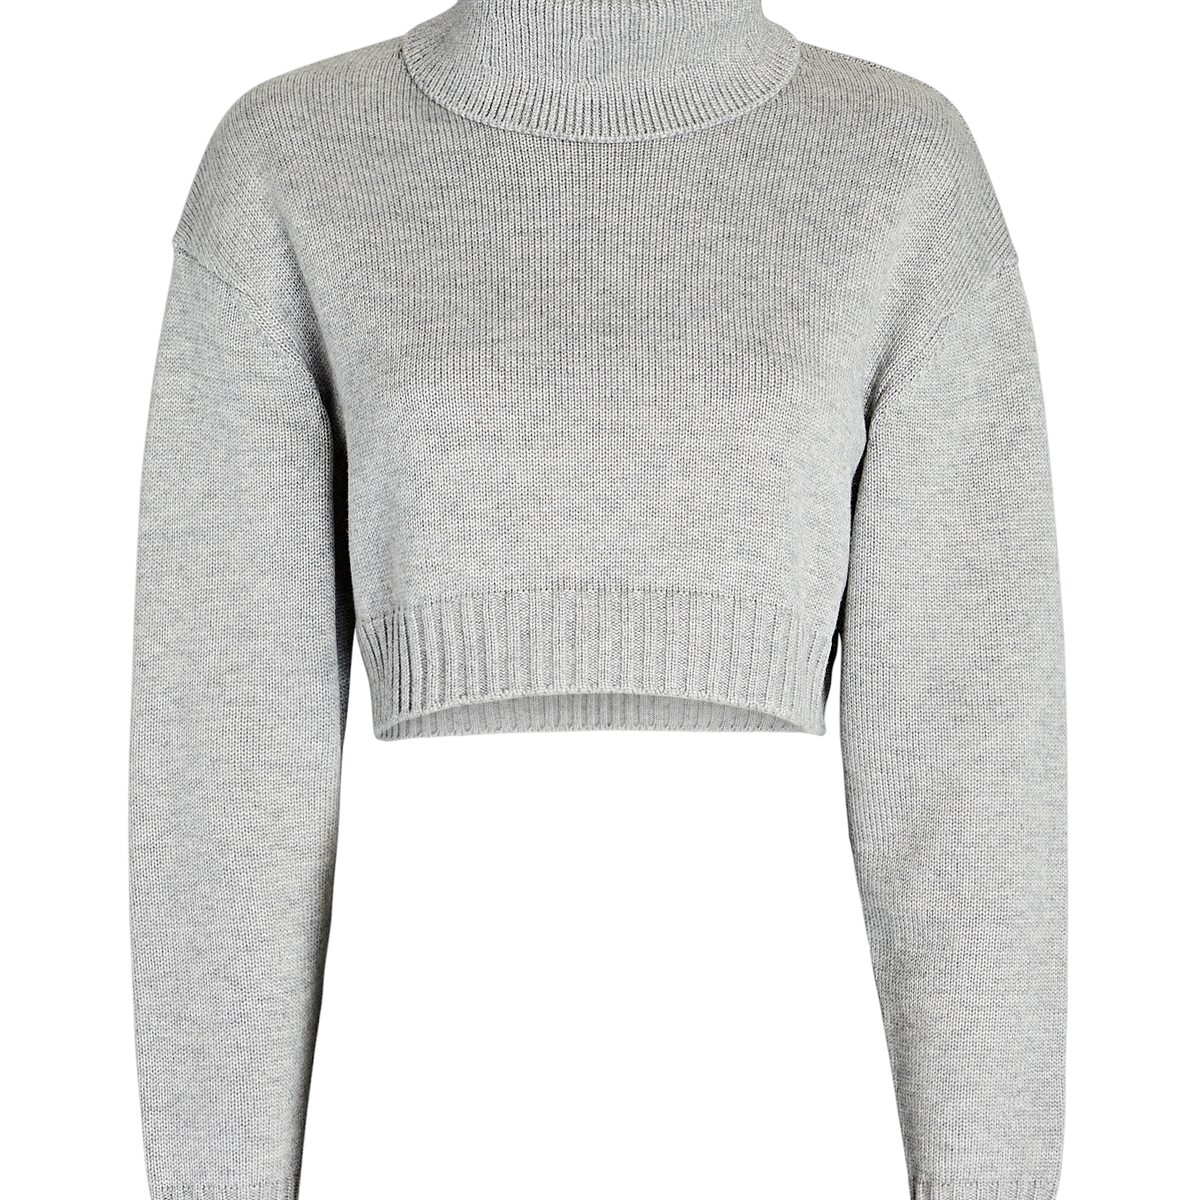 Ronny Kobo Sarki Turtleneck Sweater In Grey | INTERMIX®